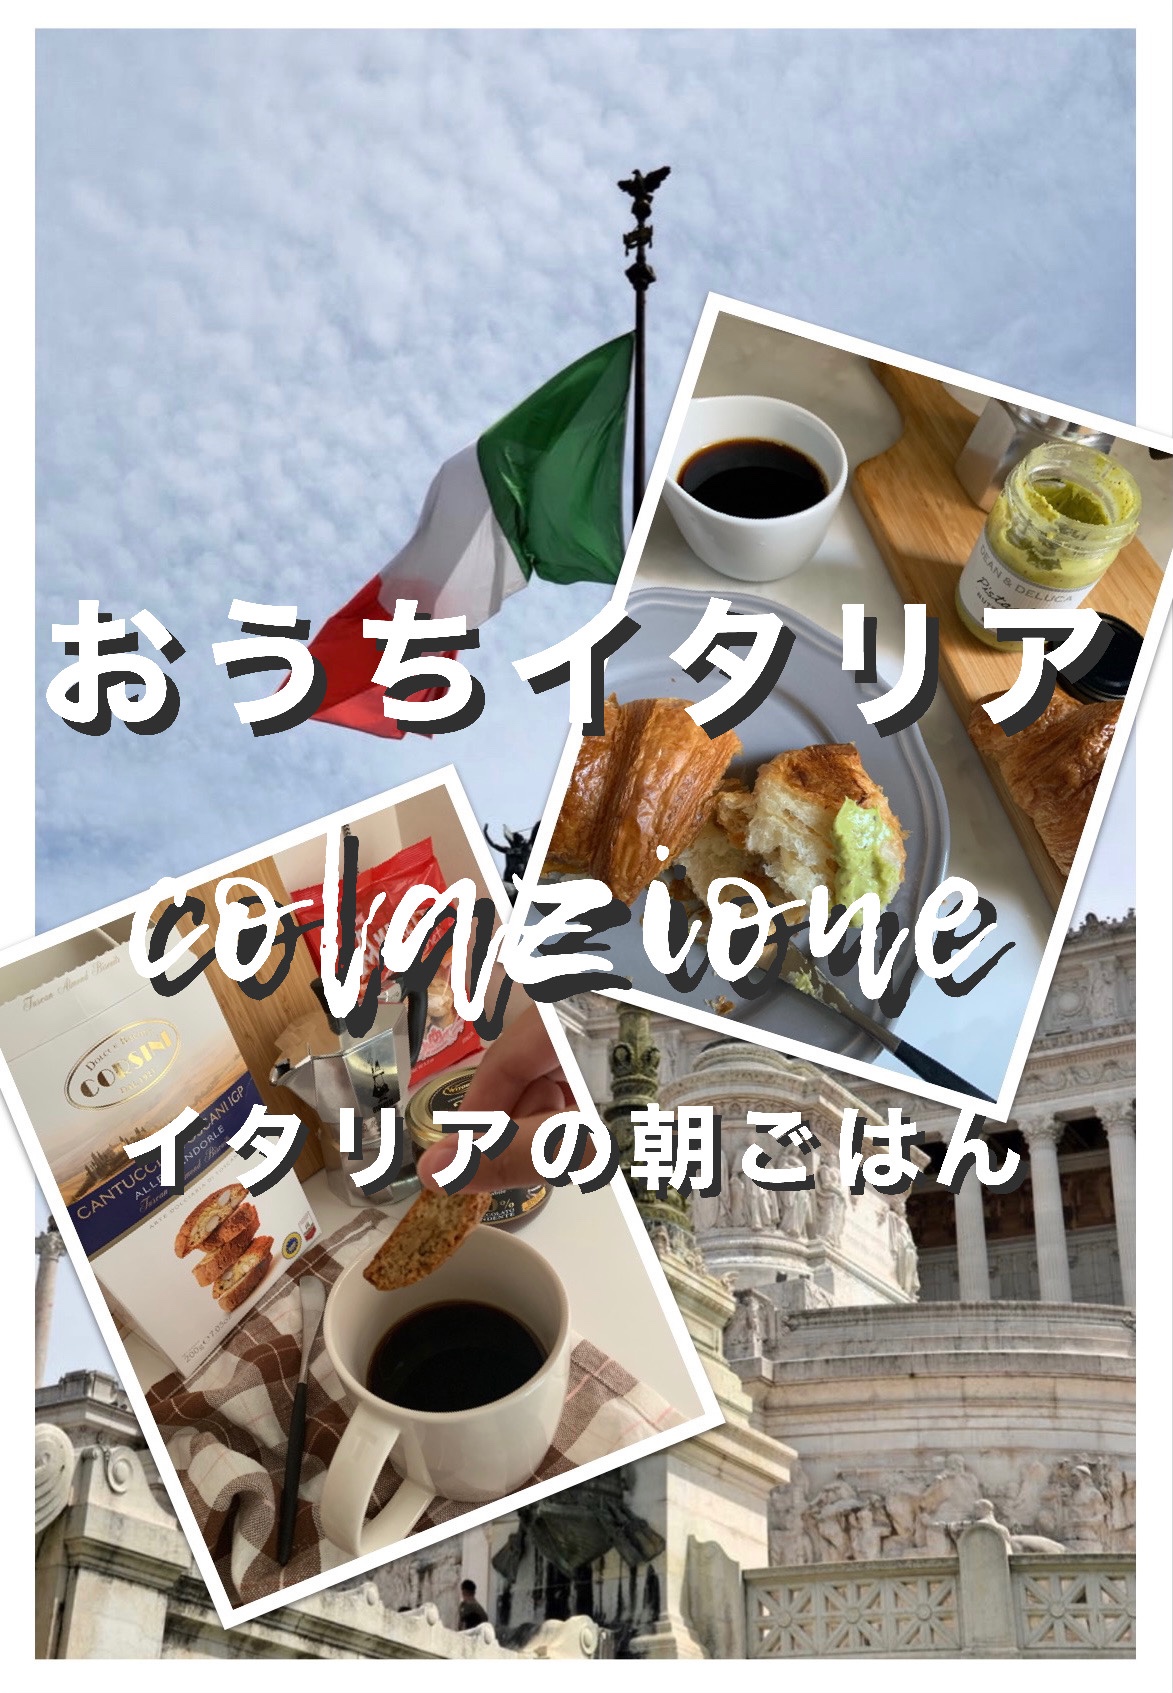 【おうちイタリア】朝は甘いものとコーヒーが定番の“colazione(コラツィオーネ)”【イタリアの朝食】